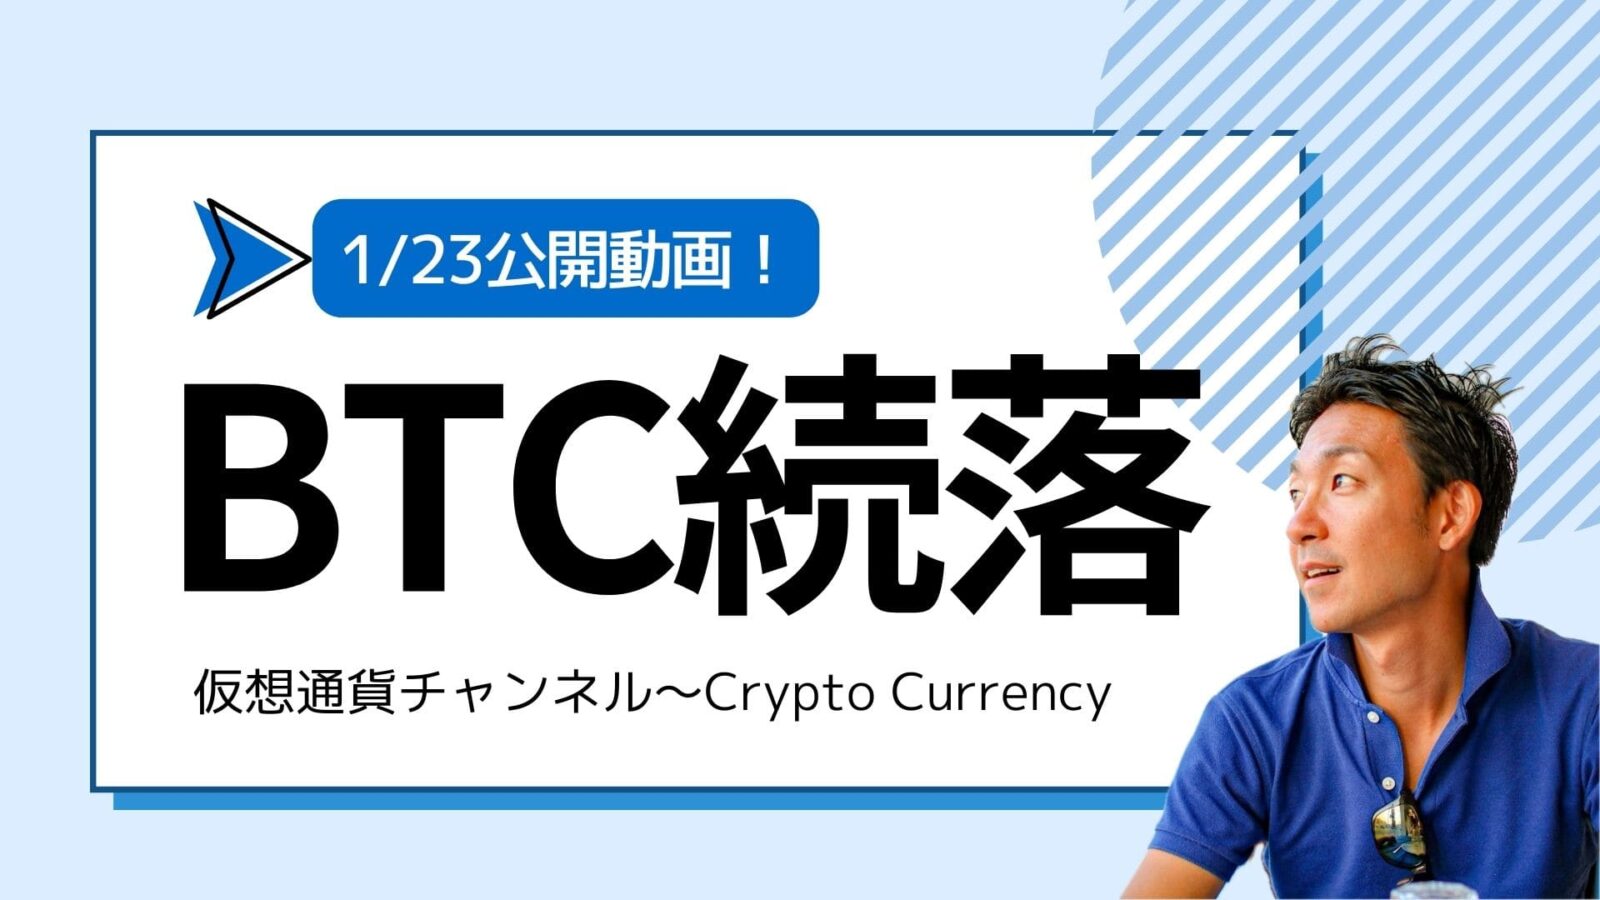 【仮想通貨チャンネル】Joe Takayamaさんが語る『ビットコイン・仮想通貨は続落。35000ドルまで下落？』1/23公開